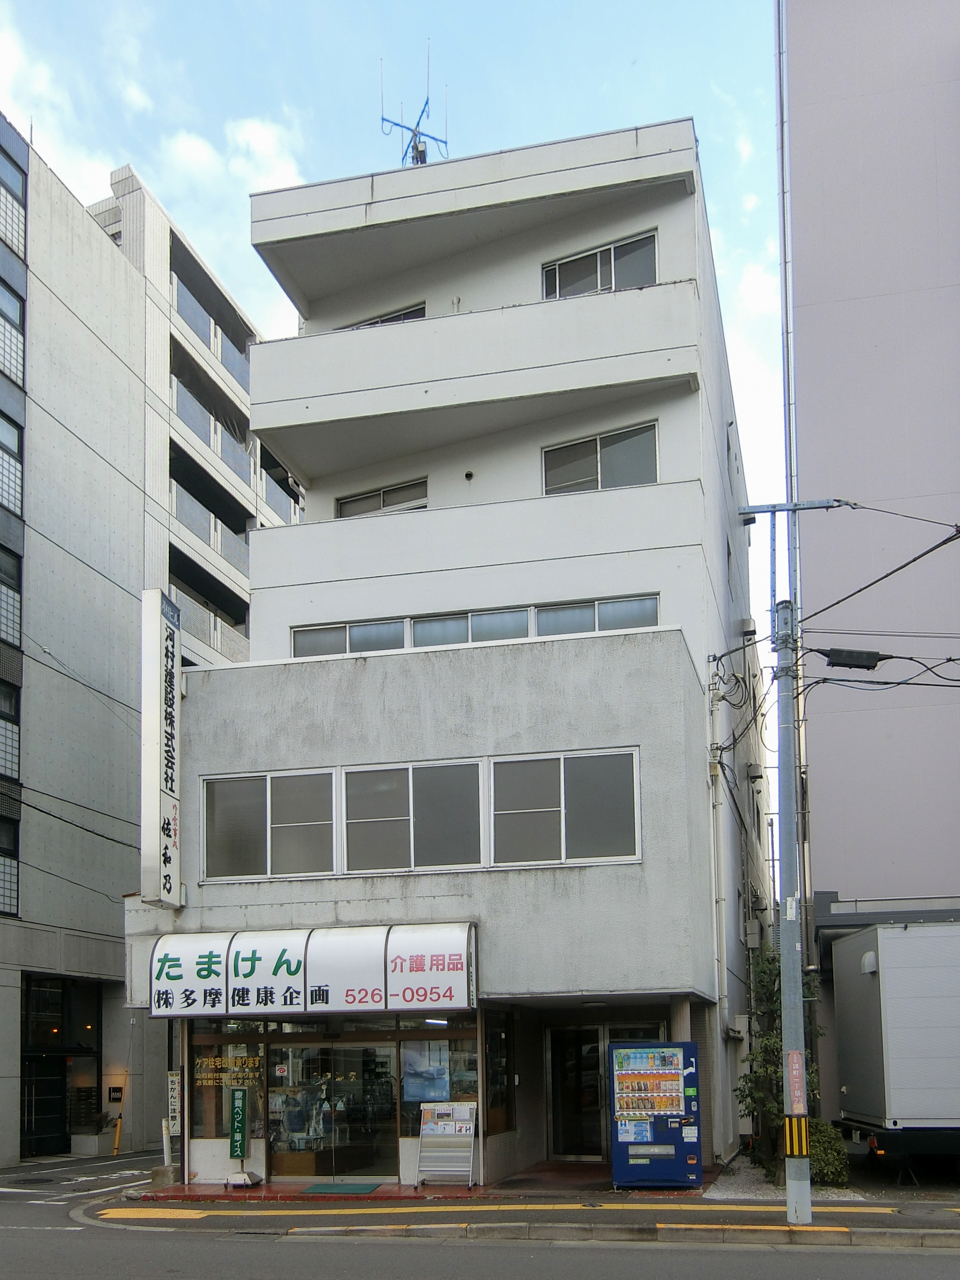 Kawamurabuilding